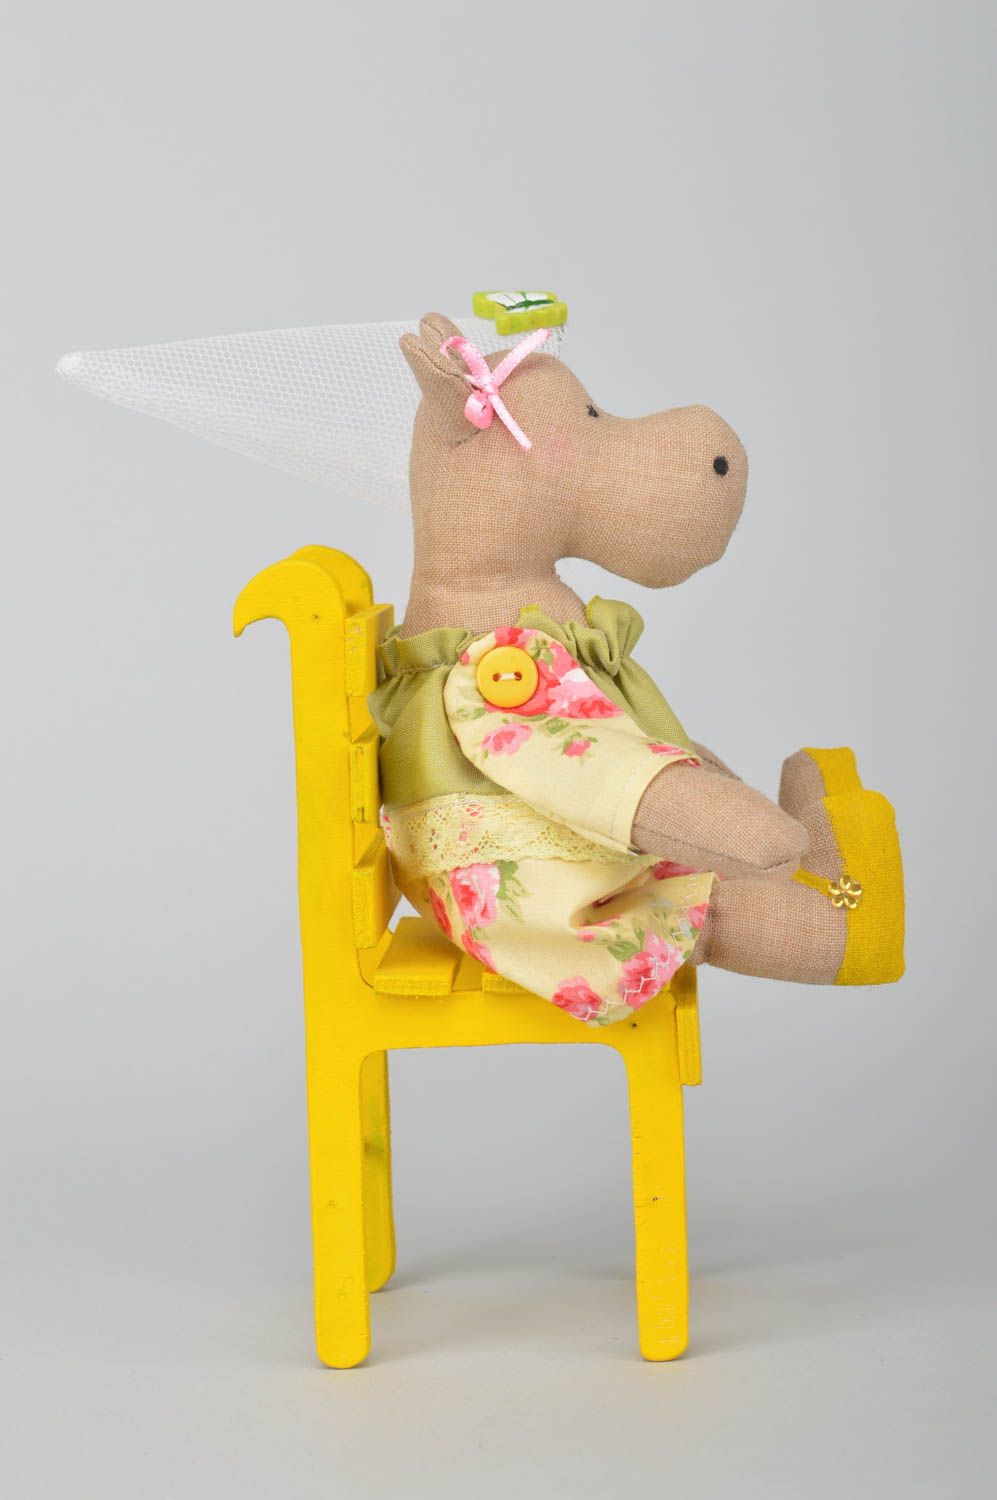 Мягкая игрушка ручной работы из хлопка для декора дома Бегемотик на желтом стуле фото 2